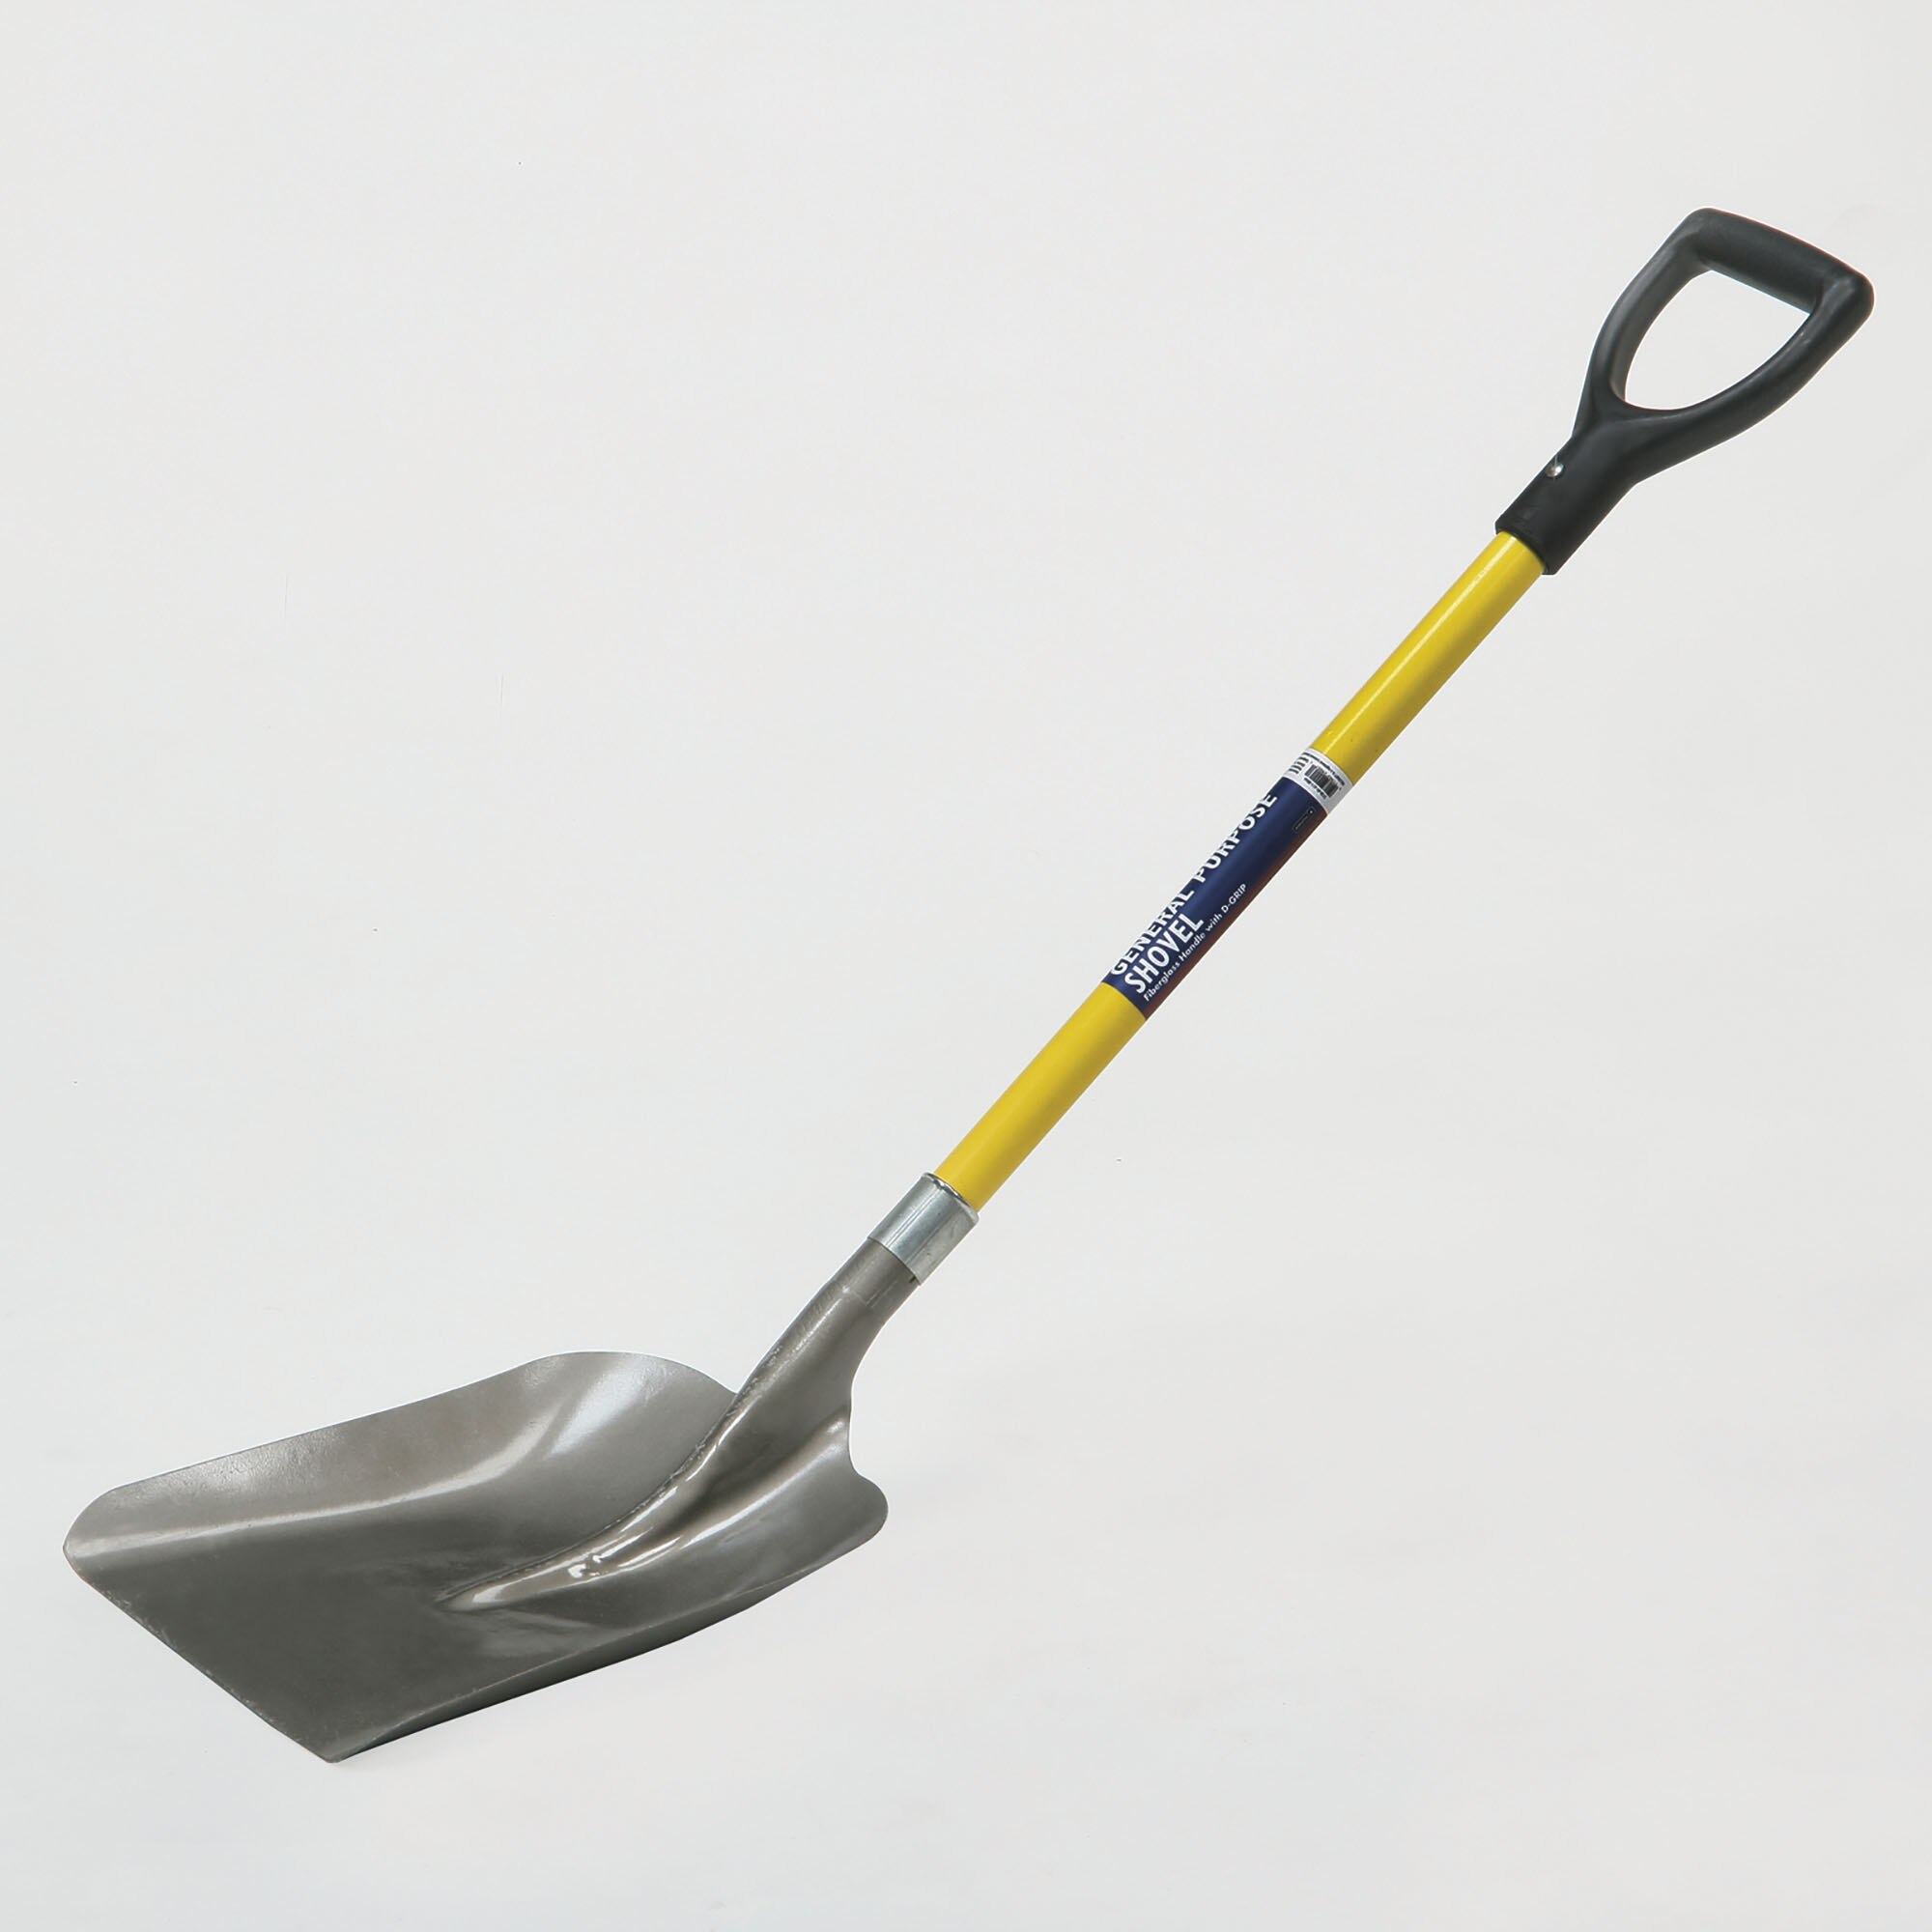 Shovel, General Purpose, Steel Scoop, Industrial Grade, 29" Fiberglass Handle, D-grip